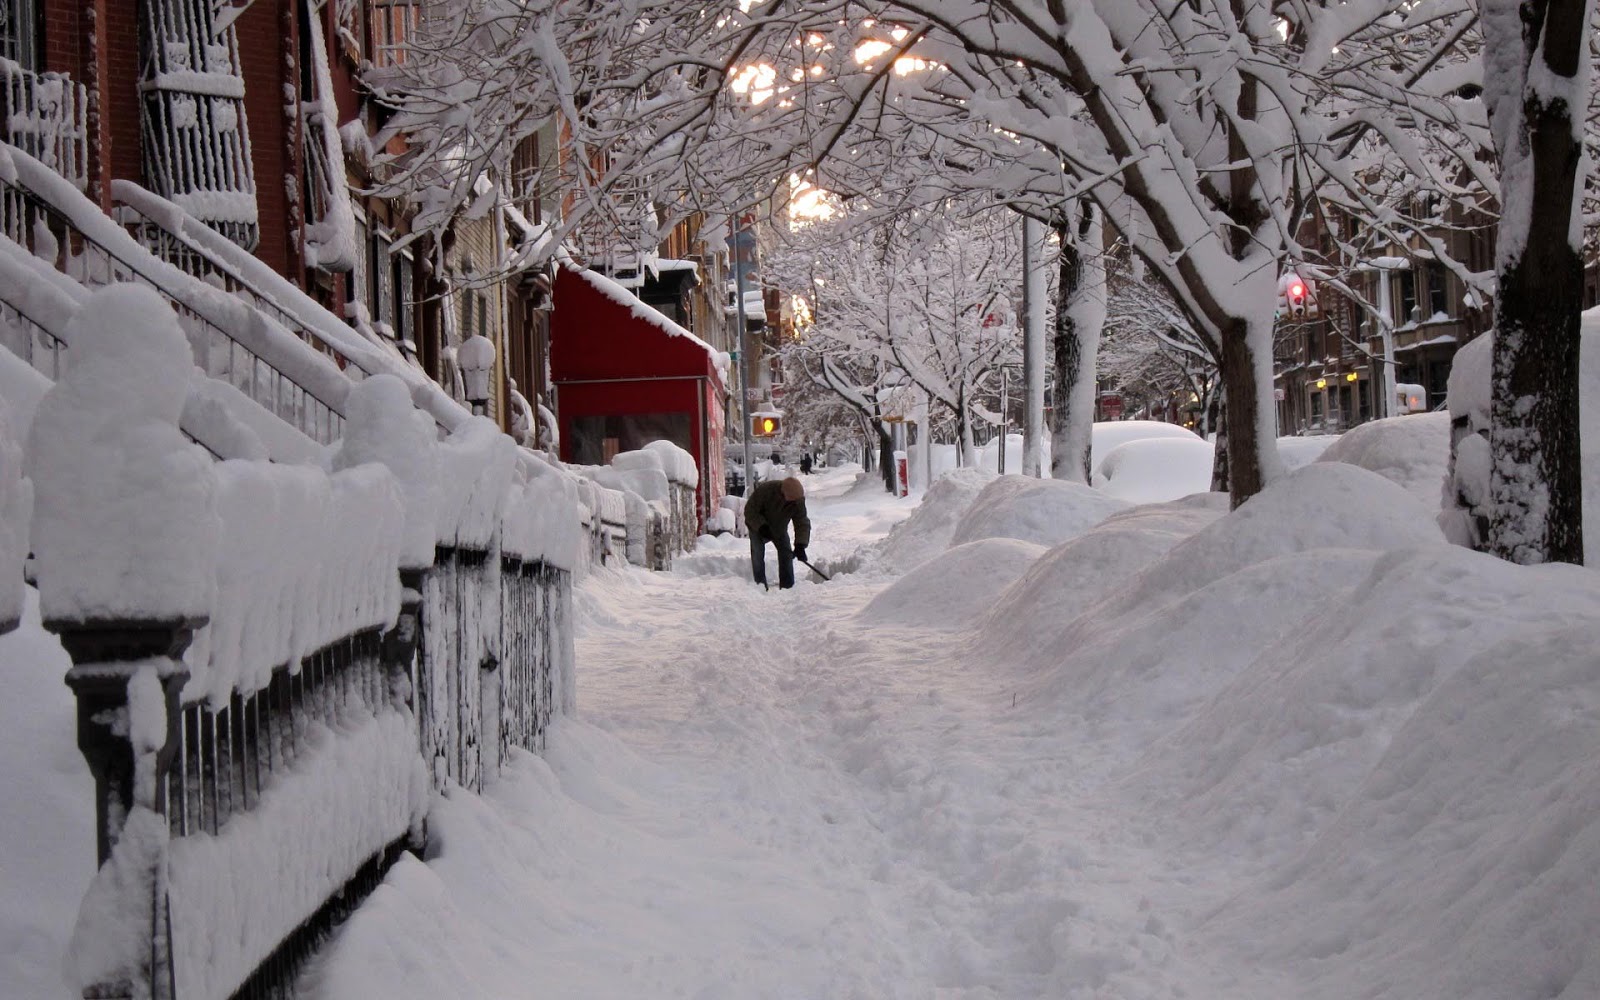 http://2.bp.blogspot.com/-nTlfe6vs8TI/UOBBwO98AkI/AAAAAAAAKkE/unVWSe23yoE/s1600/foto-van-een-man-aan-het-sneeuwscheppen-in-een-straat-in-new-york-hd-winter-wallpaper.jpg